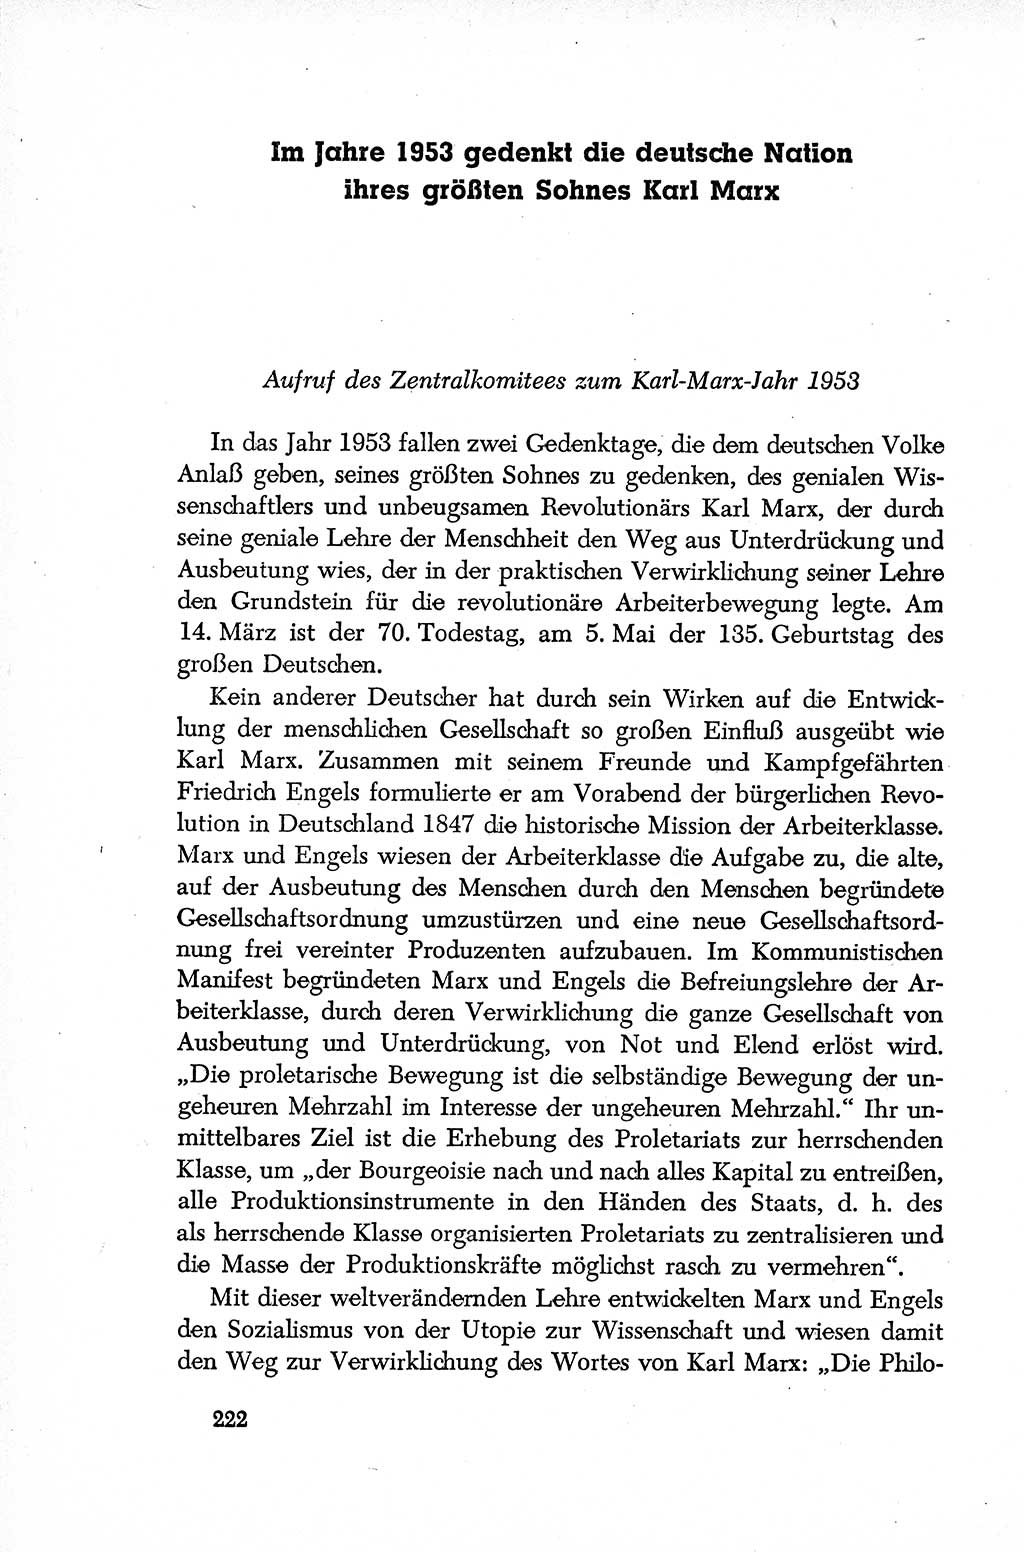 Dokumente der Sozialistischen Einheitspartei Deutschlands (SED) [Deutsche Demokratische Republik (DDR)] 1952-1953, Seite 222 (Dok. SED DDR 1952-1953, S. 222)